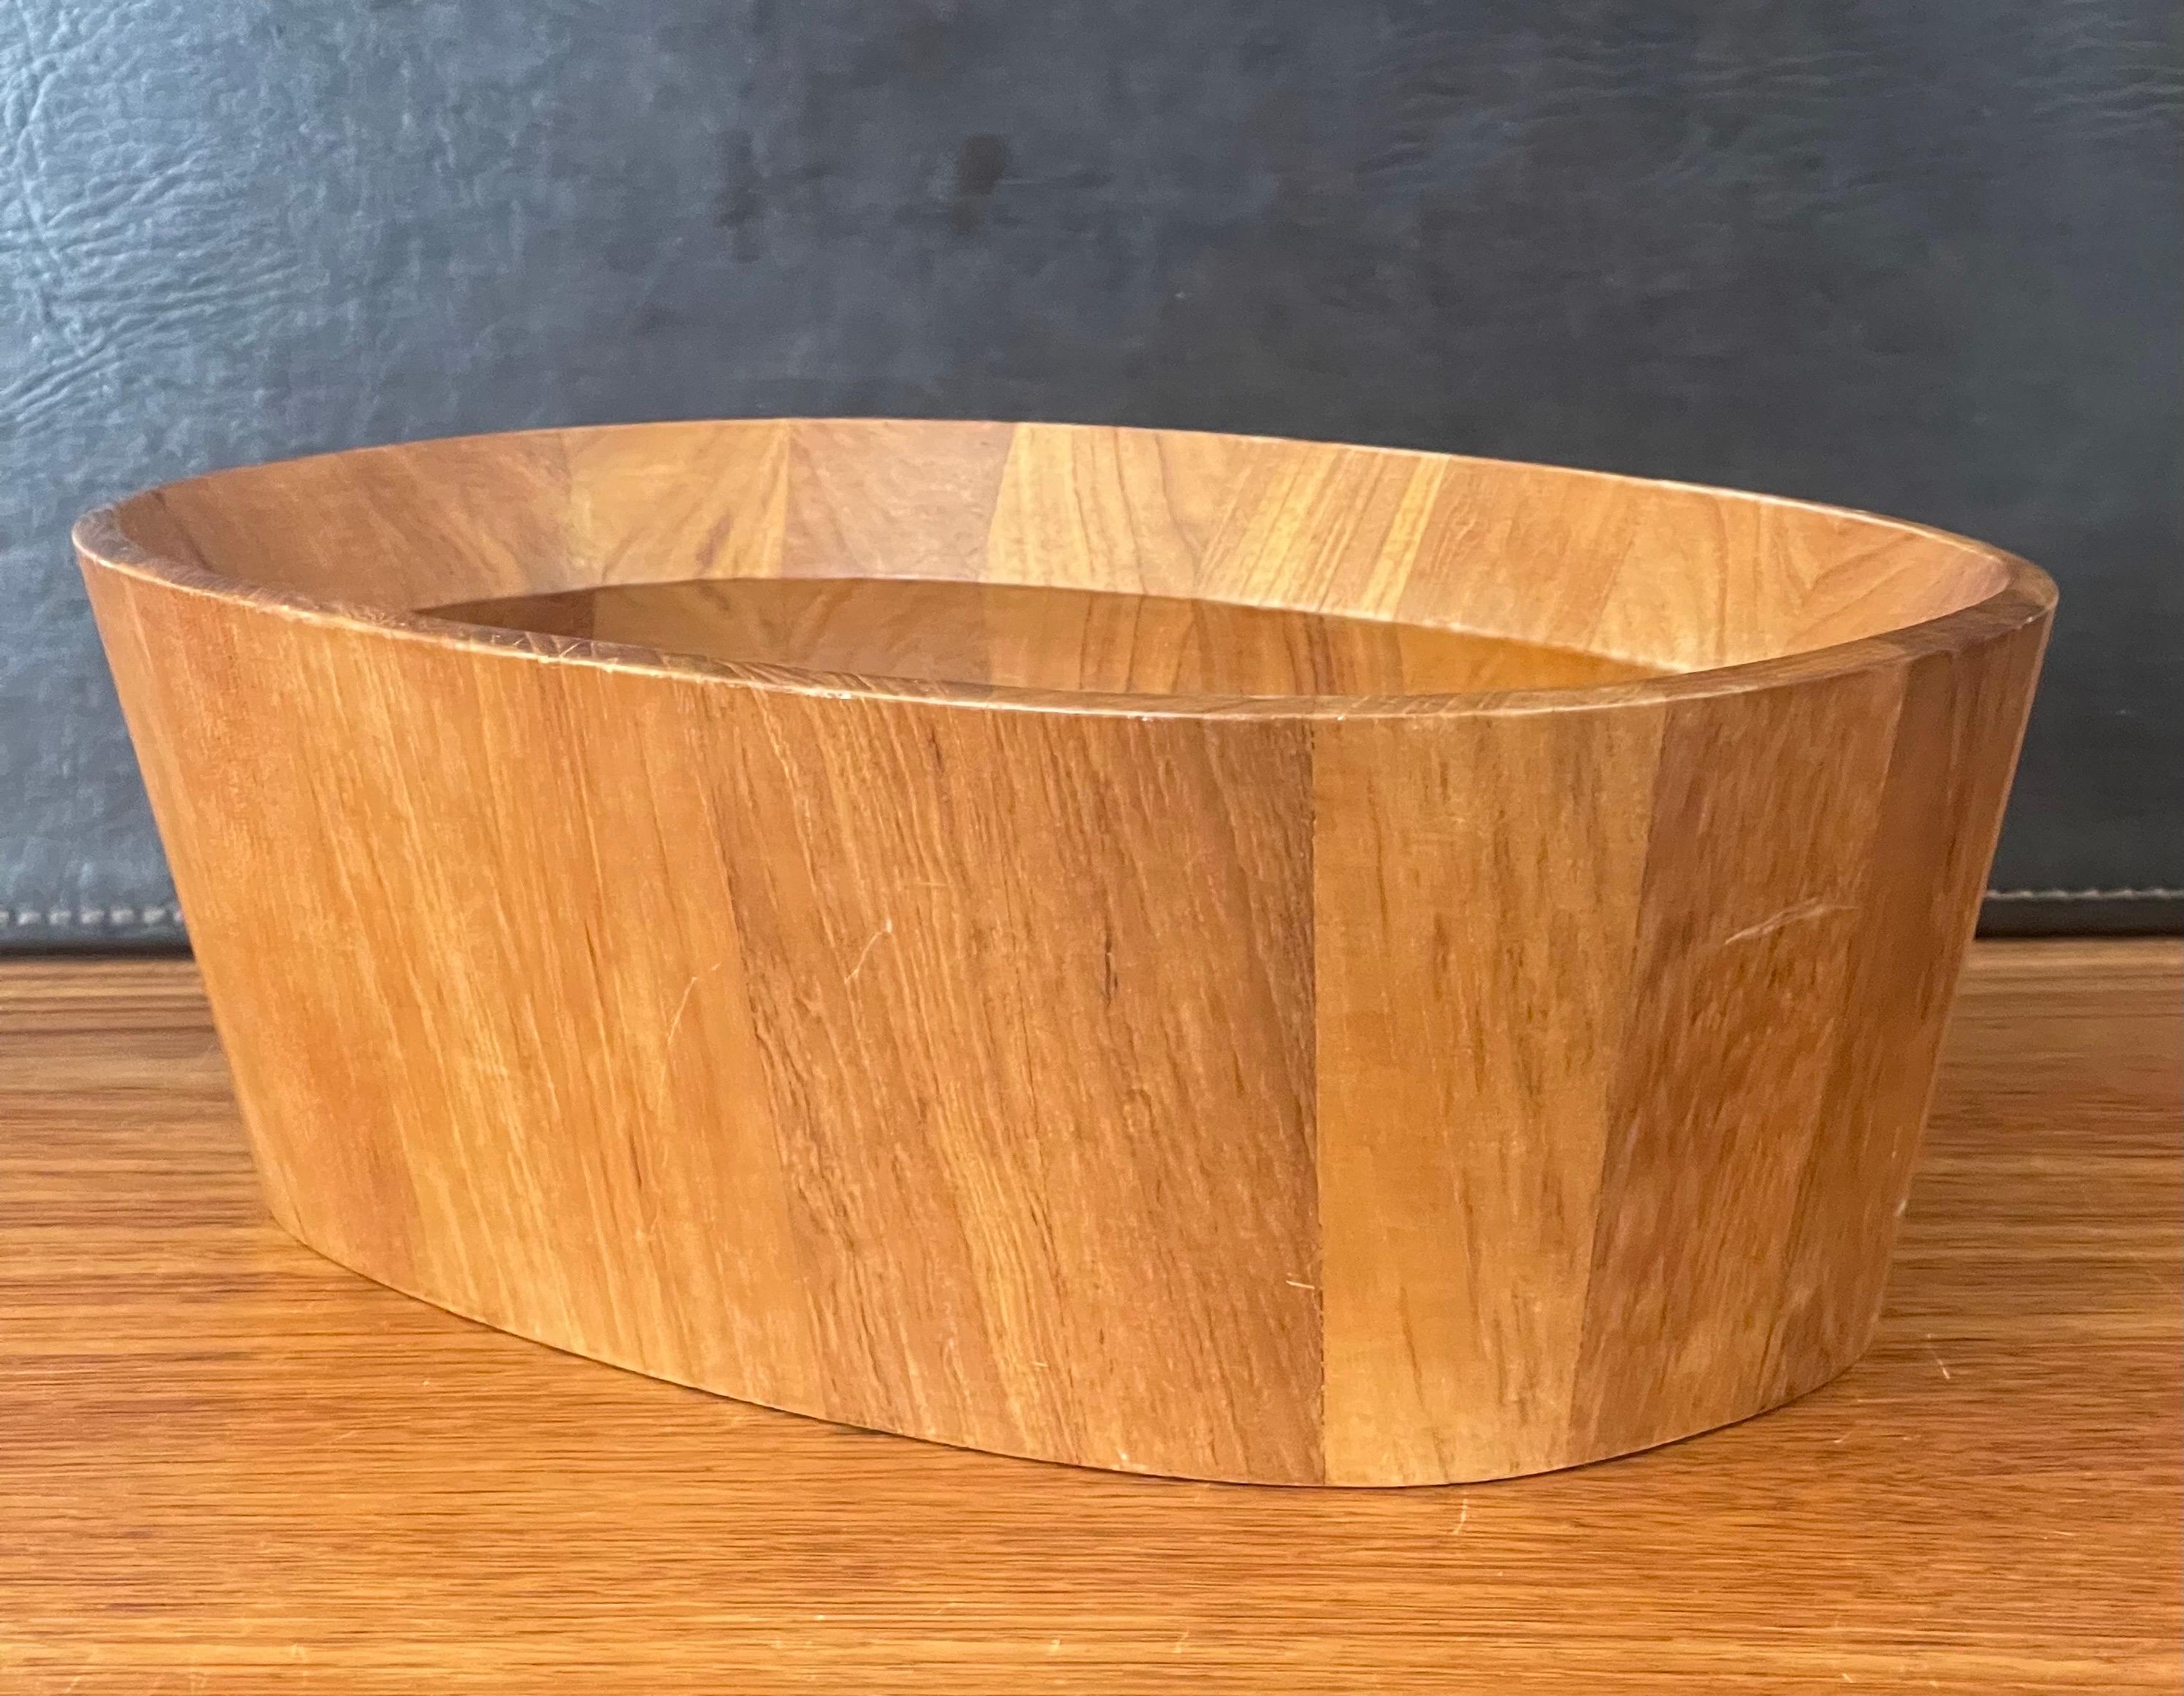 Danish Modern Oval Shaped Staved Teak Bowl by Jens Quistgaard for Dansk For Sale 6